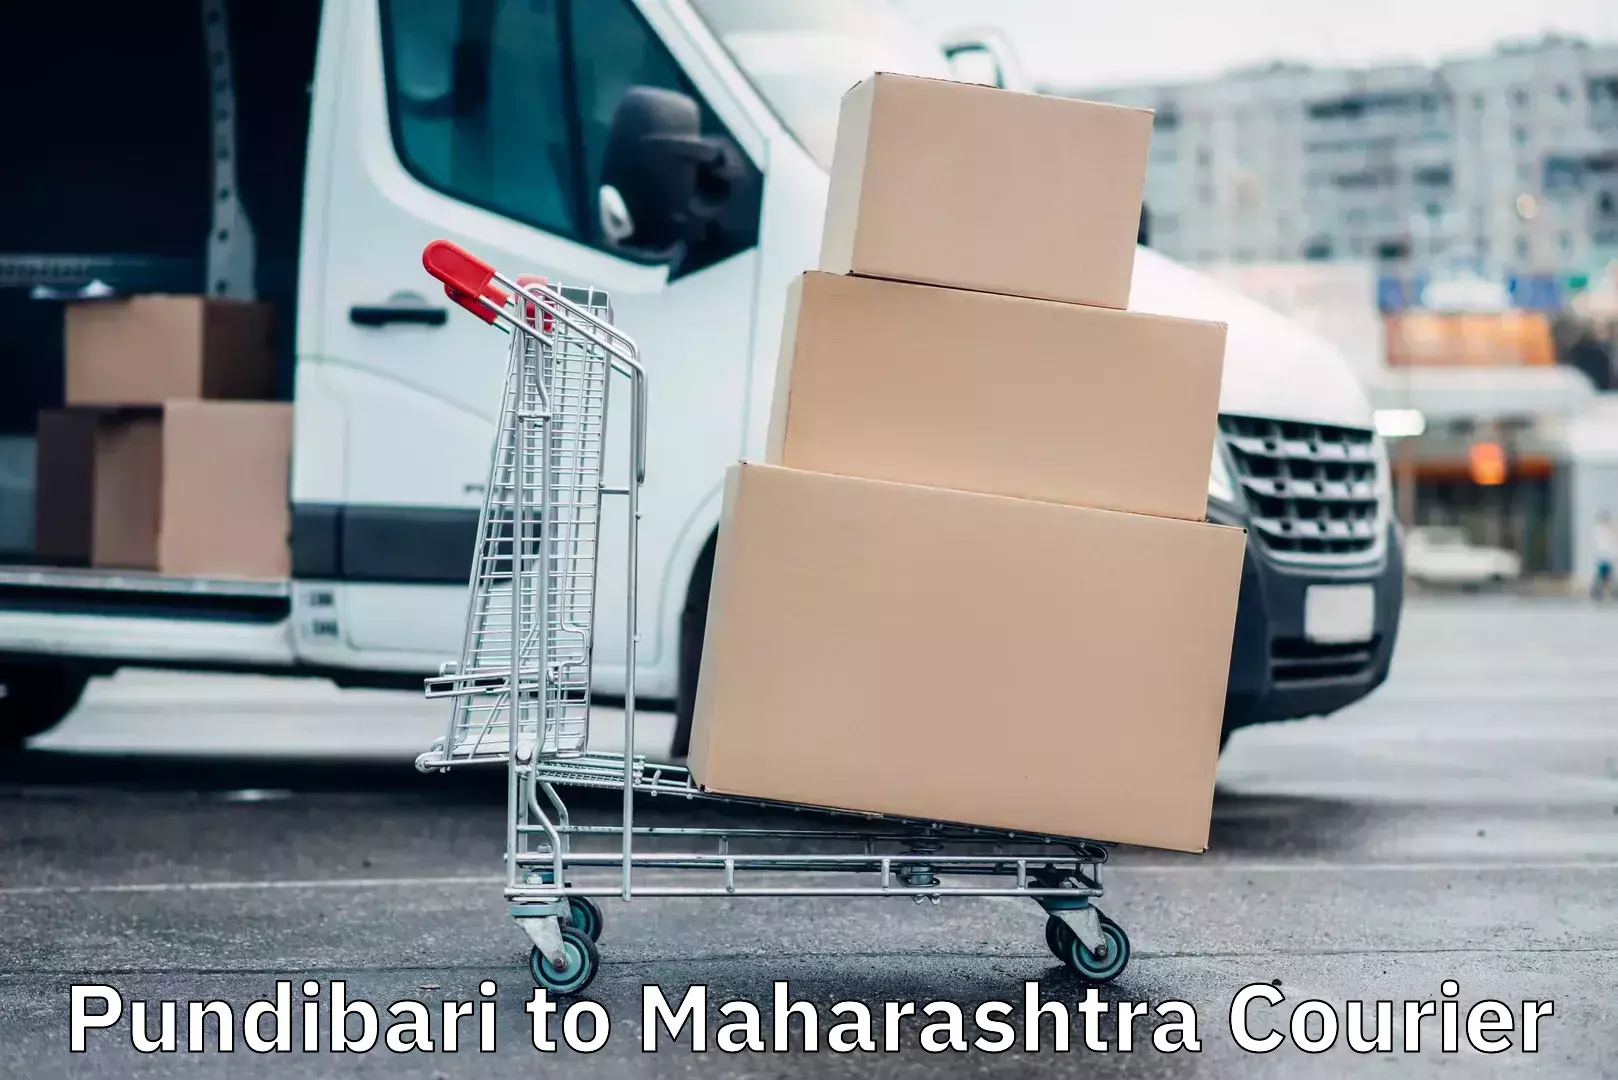 High-capacity parcel service Pundibari to Maharashtra